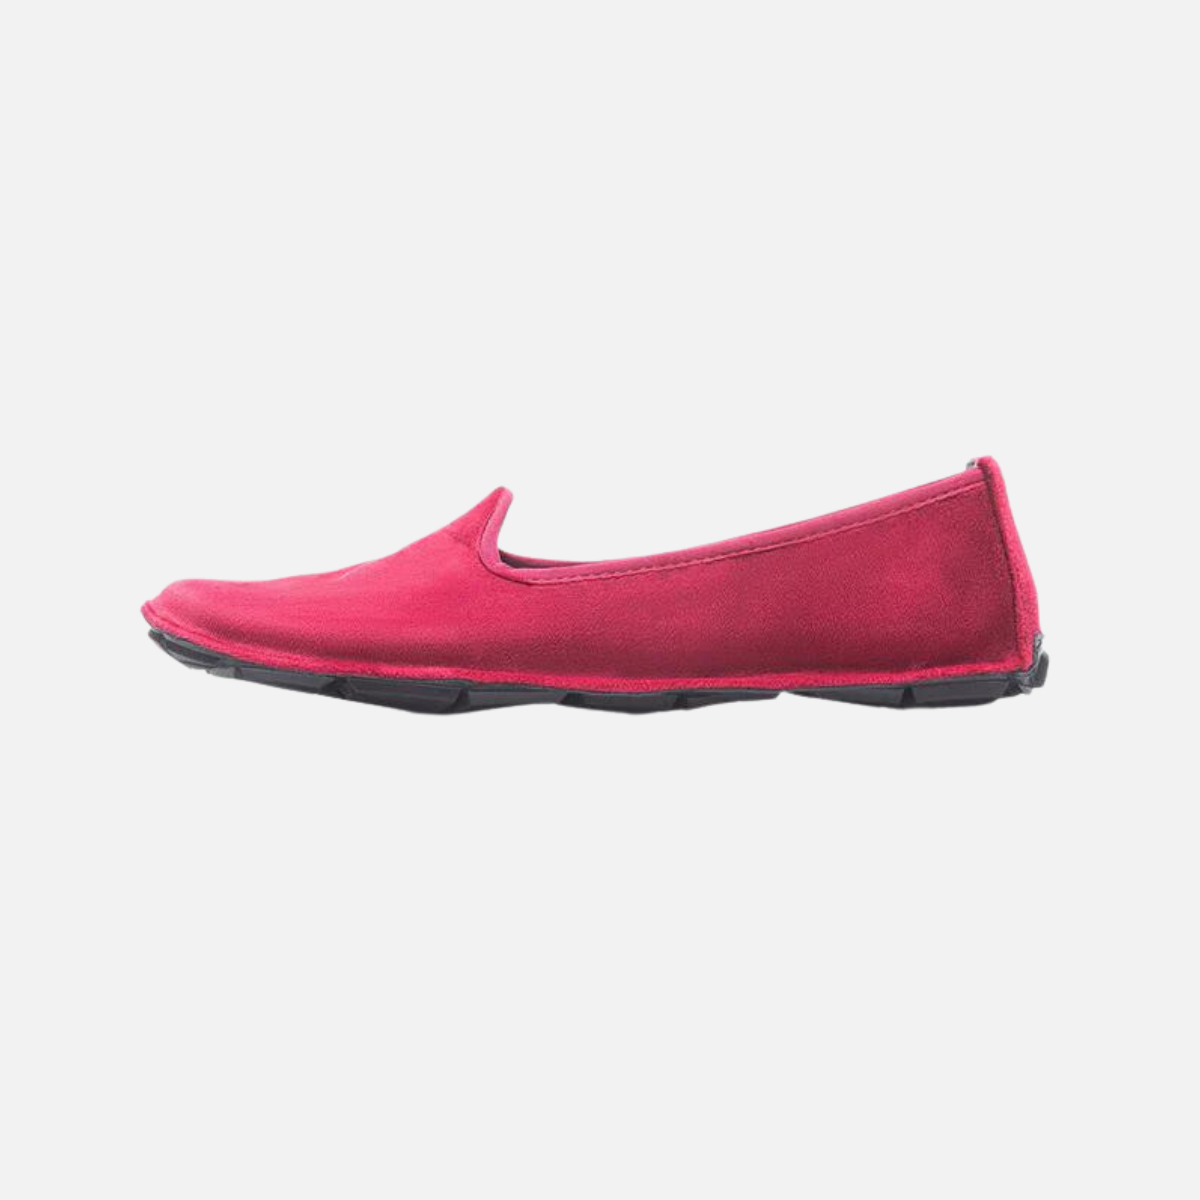 Vibram ONEQ Slipon Velvet Women's Casual Shoes-Red/Black